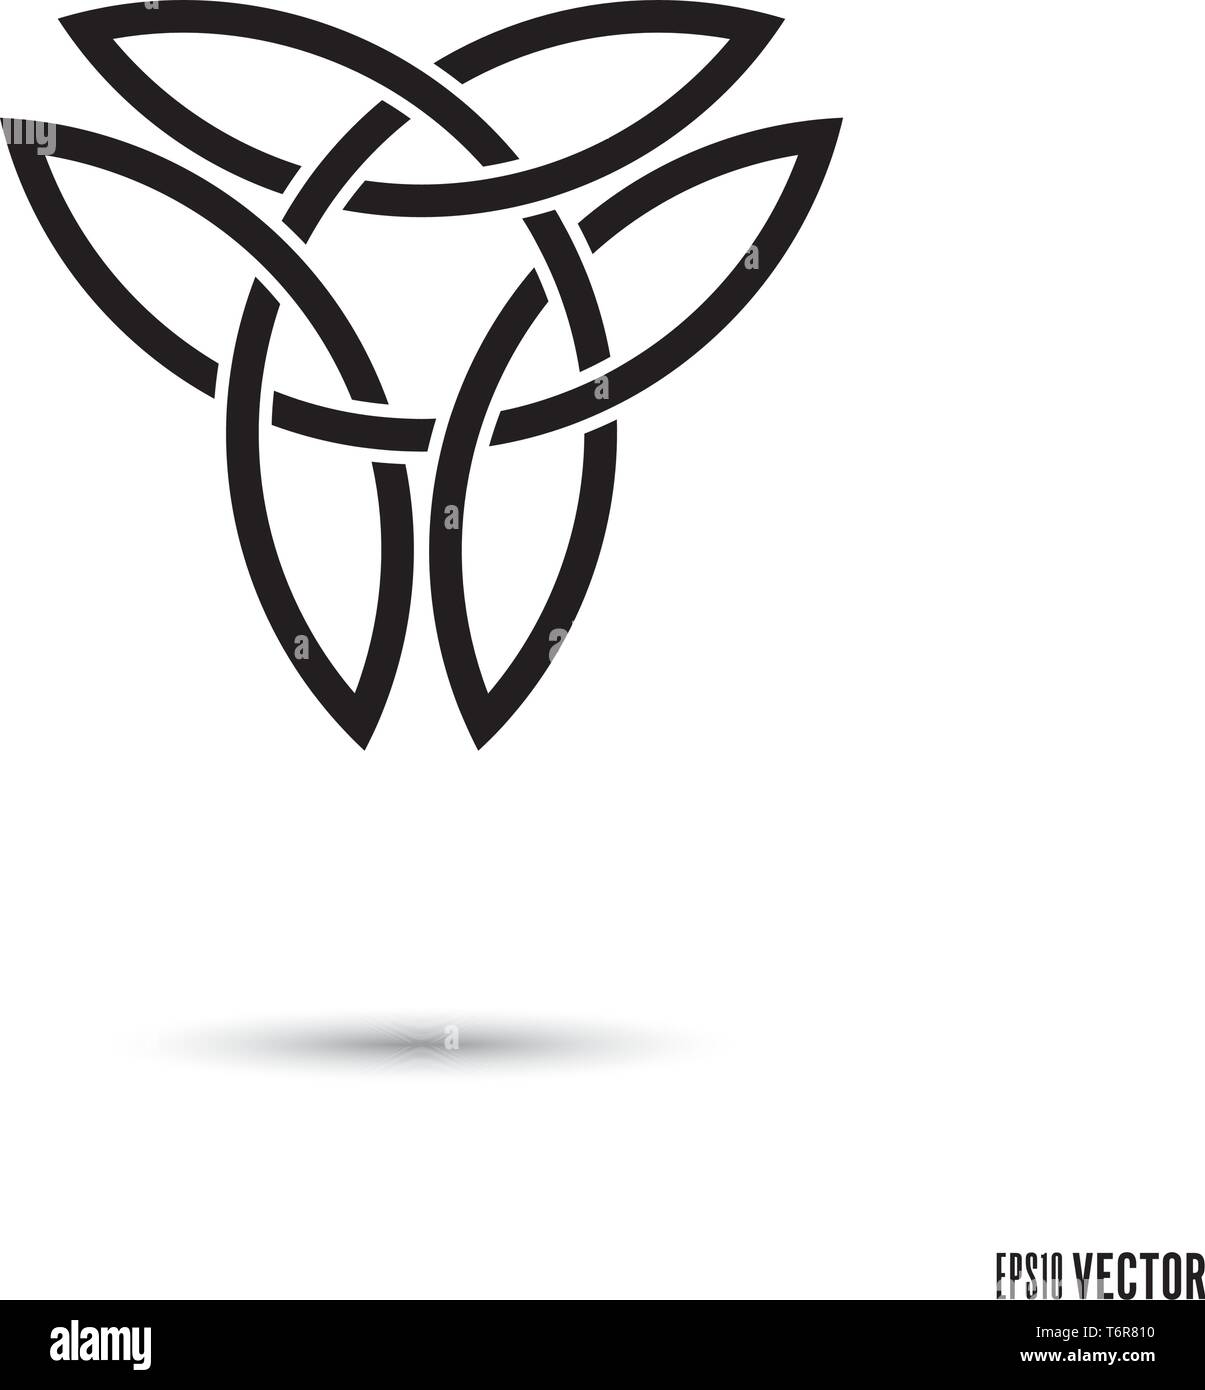 Noeud celtique, symbole triquetra double entrelacés rubans sans fin vector illustration Illustration de Vecteur